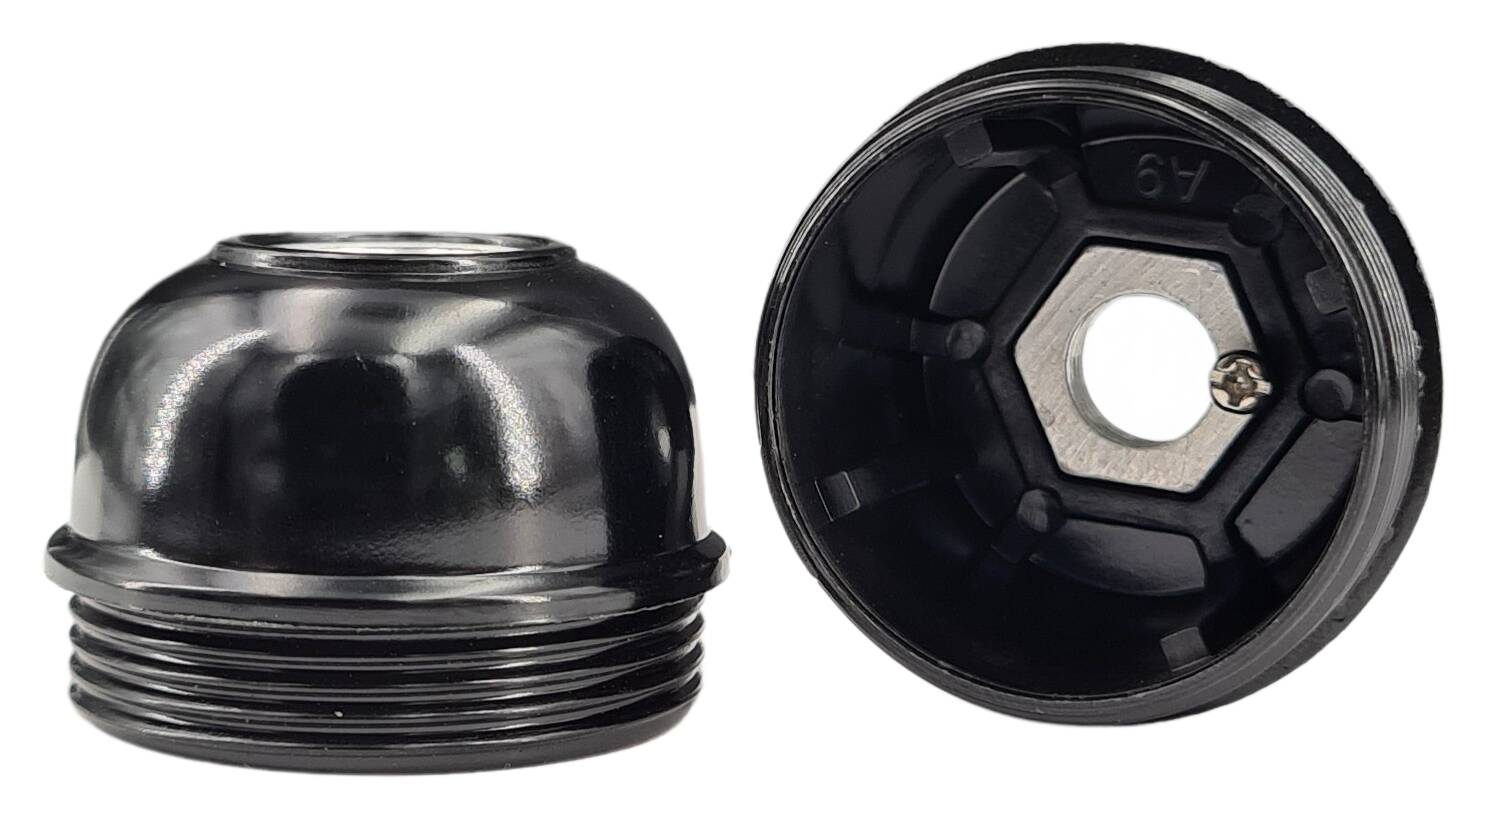 E27 cap for bakelite lampholder M10x1 iron thread black